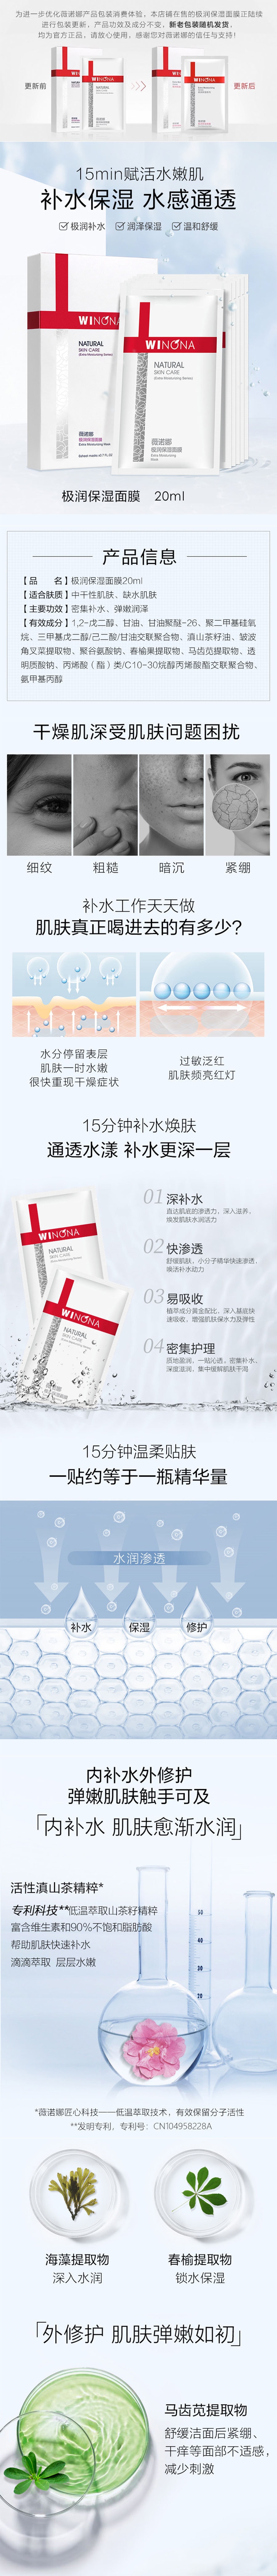 中國薇諾娜(WINONA) 極潤保濕面膜20ml 敏感肌專用 舒緩修護 敏感肌補水保濕修護屏障舒緩滋潤 拉新價 限量300份